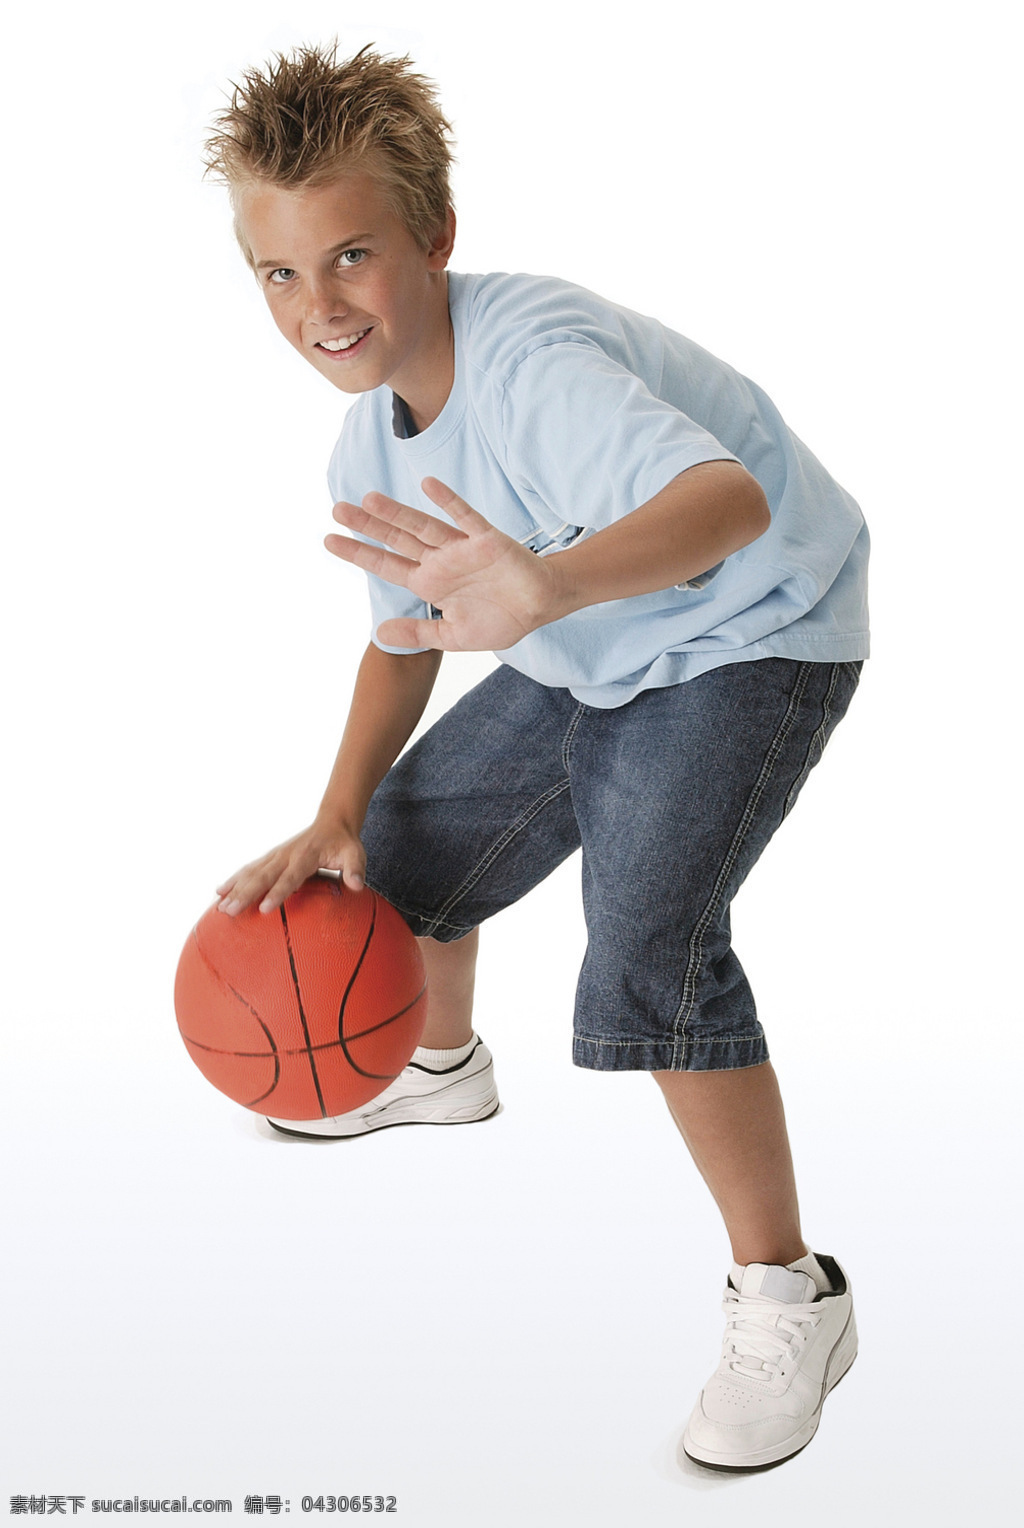 孩子玩篮球 孩子 打球 篮球 玩球 高兴 阻挡 外国孩子 外国篮球 儿童幼儿 人物图库